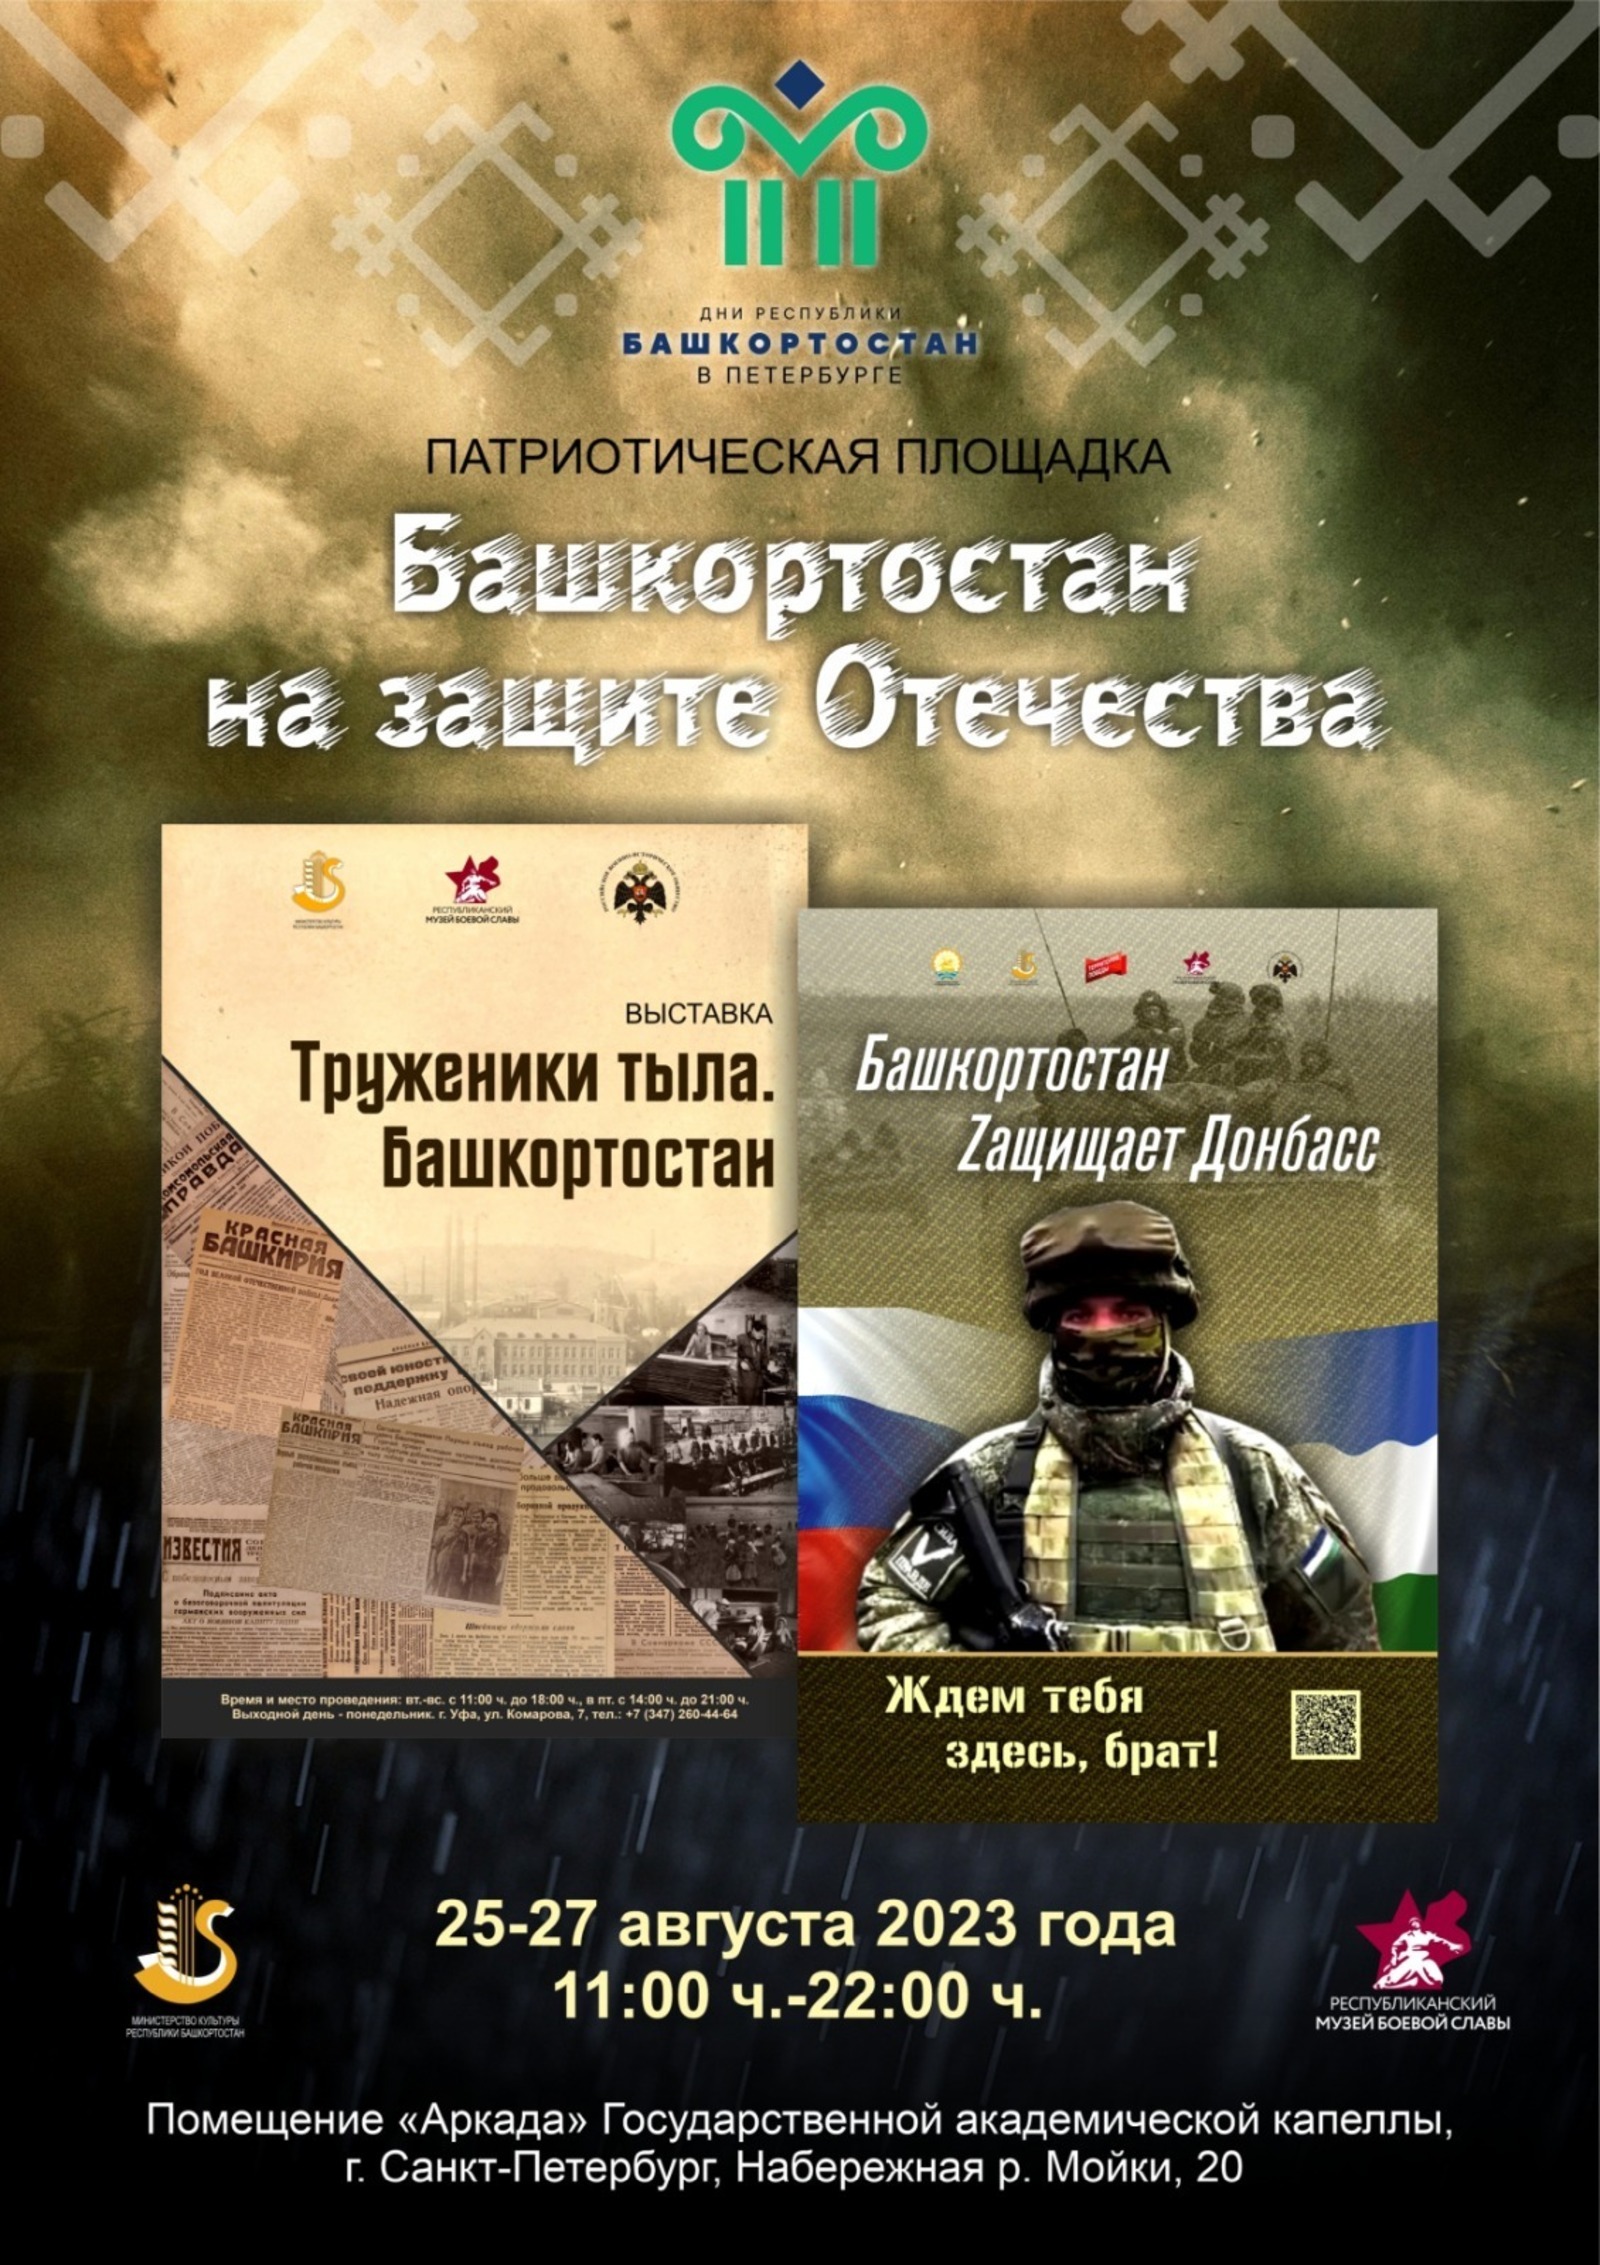 Проект «Башкортостан на защите Отечества» будет представлен в Санкт-Петербурге